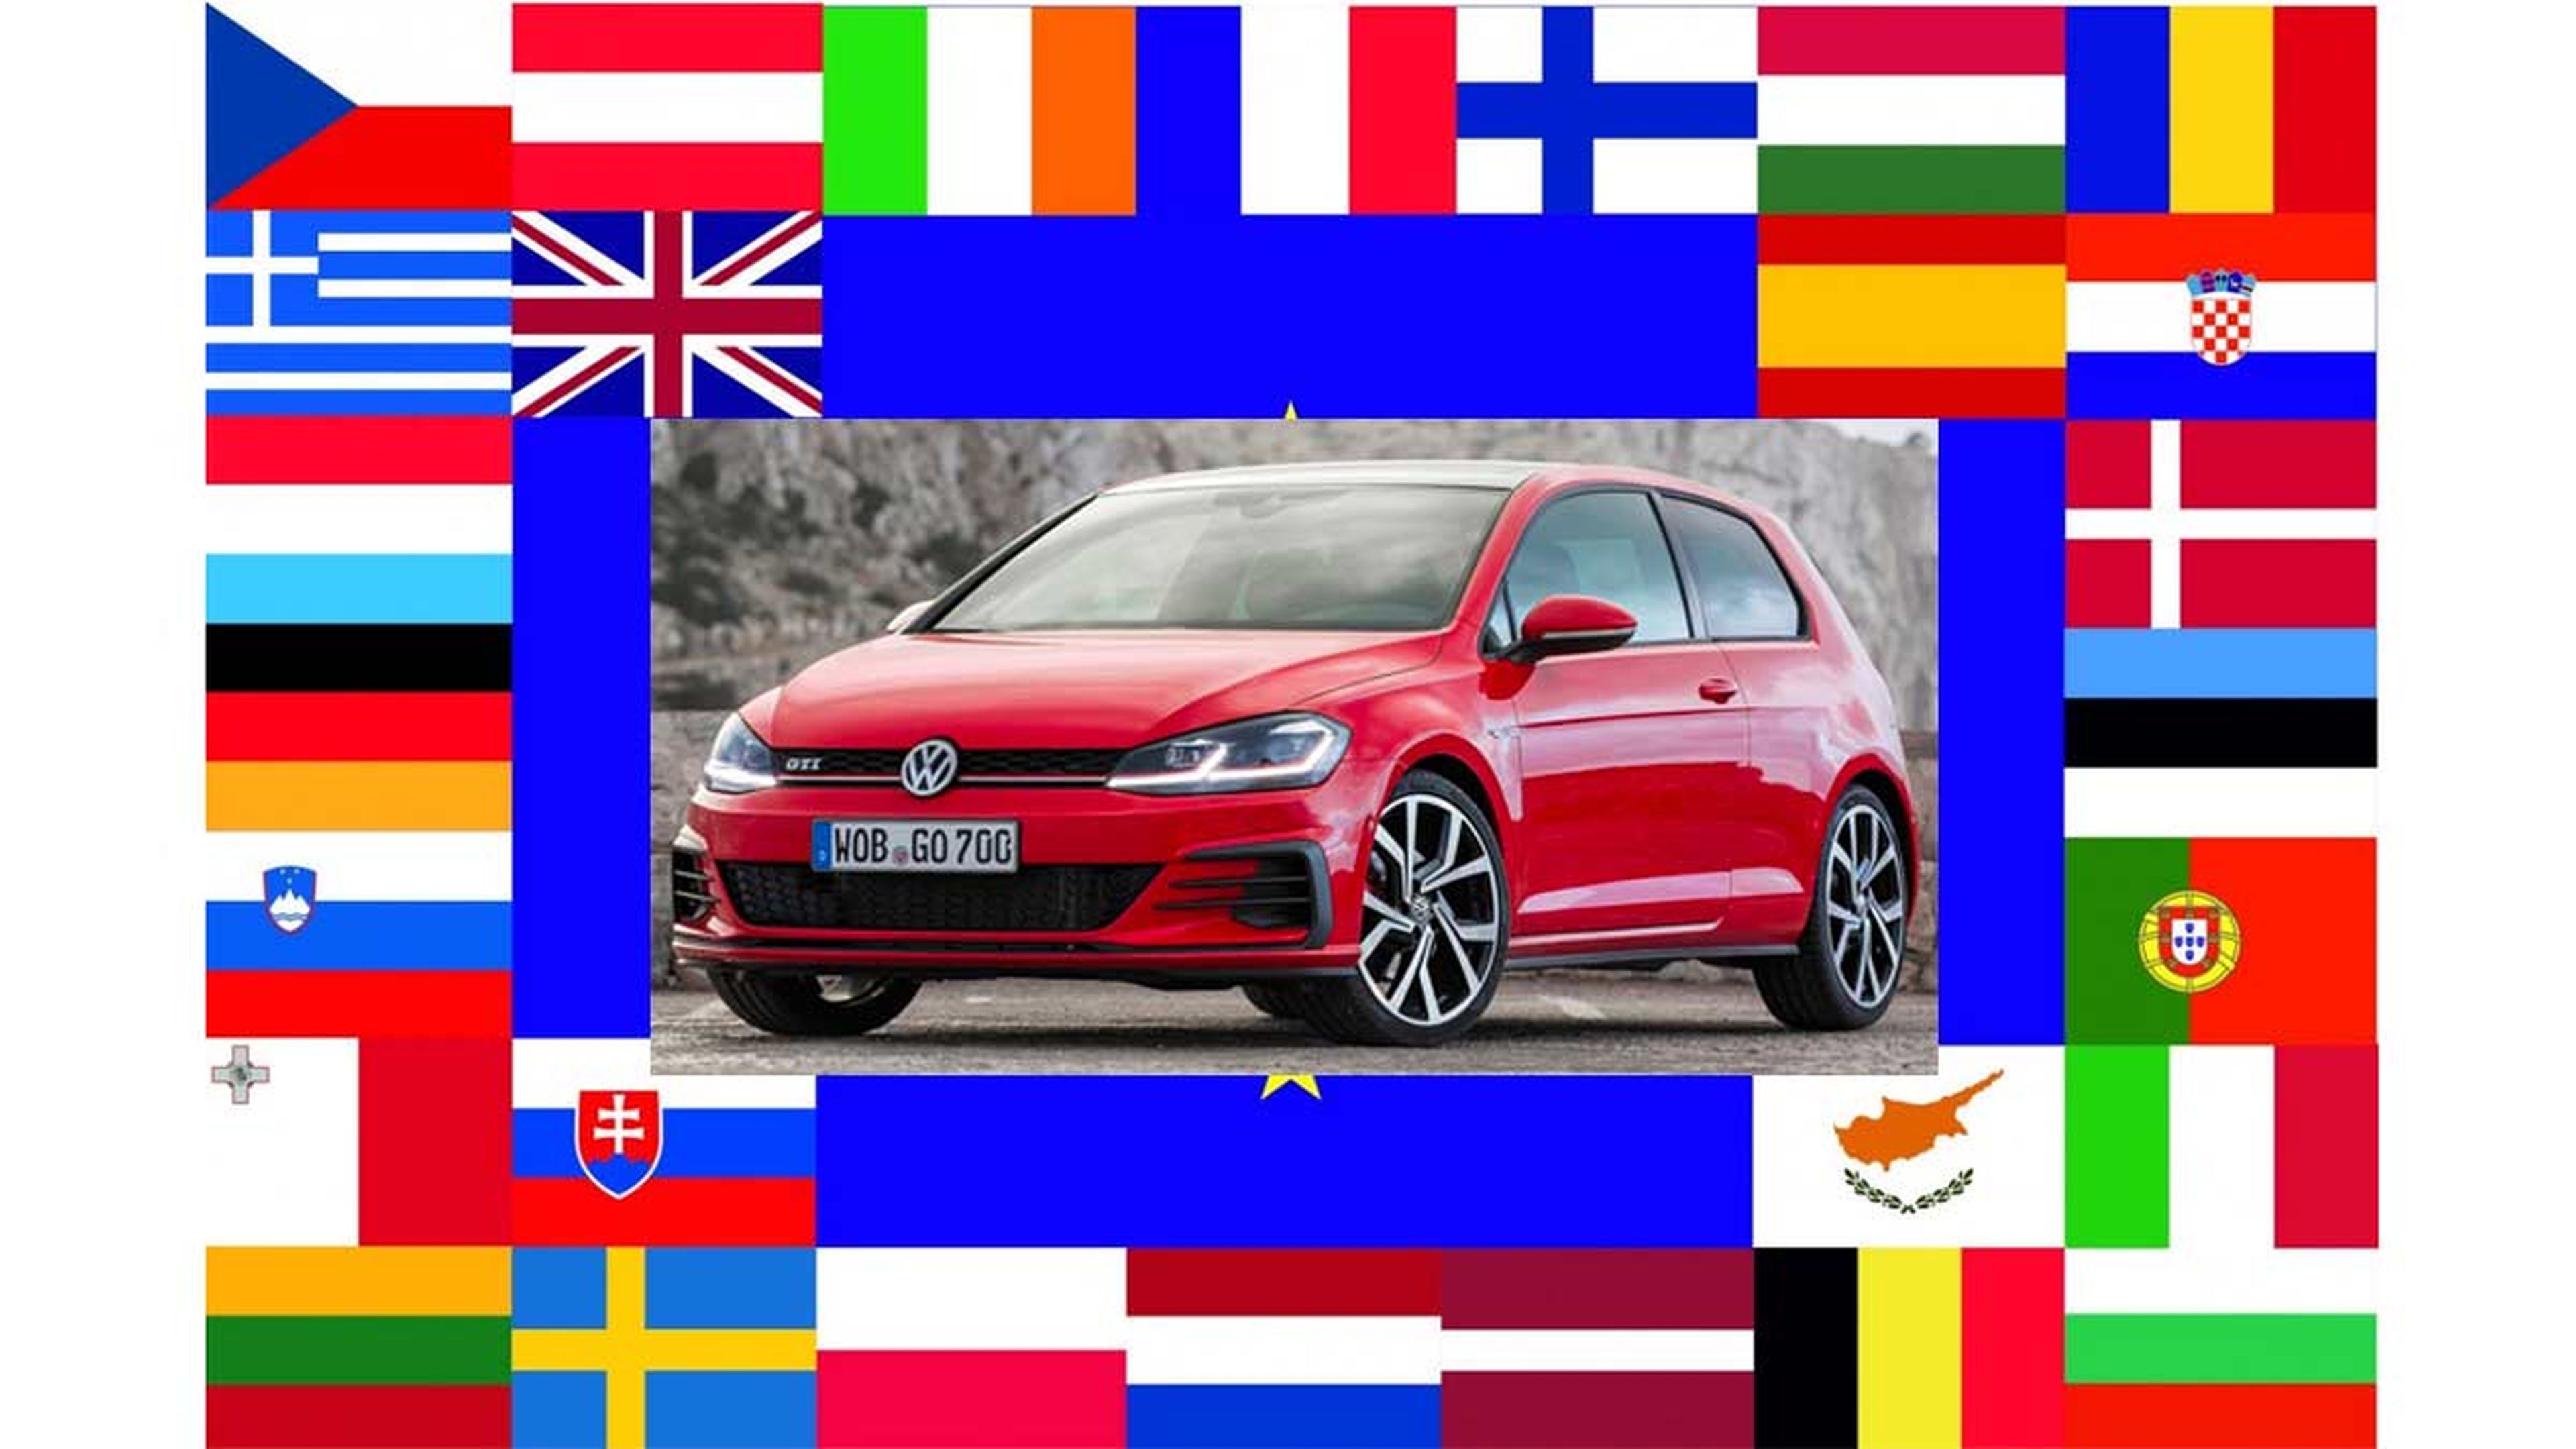 Precio coche nuevo union europea